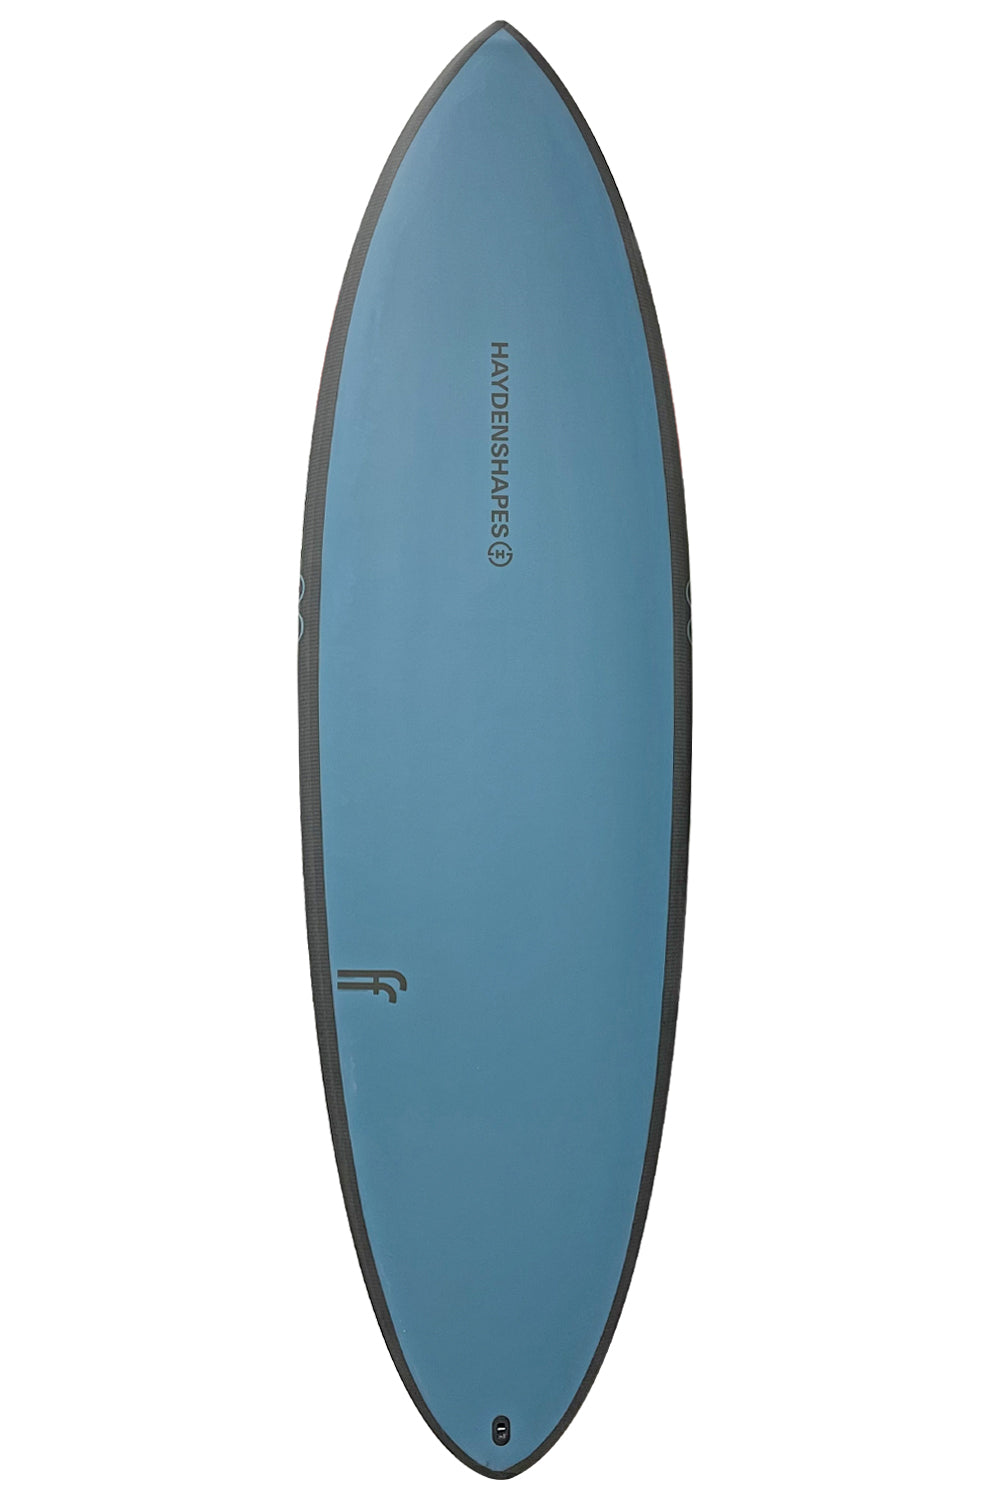 Hayden Shapes Hypto Krypto Future Flex Surfboard - Ballard Blue (2023 Model)